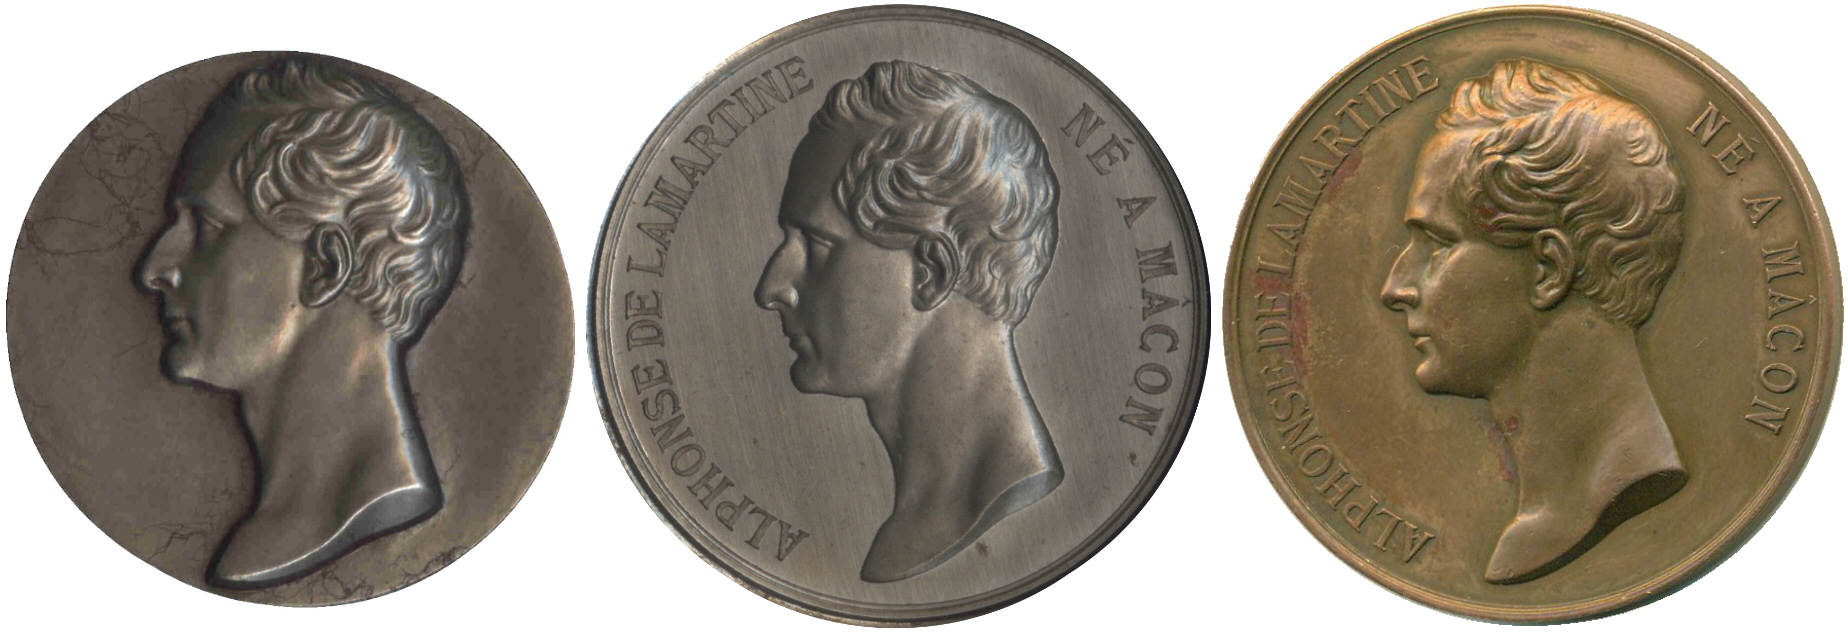 Médaille à l’effigie d’Alphonse de LAMARTINE : des réponses